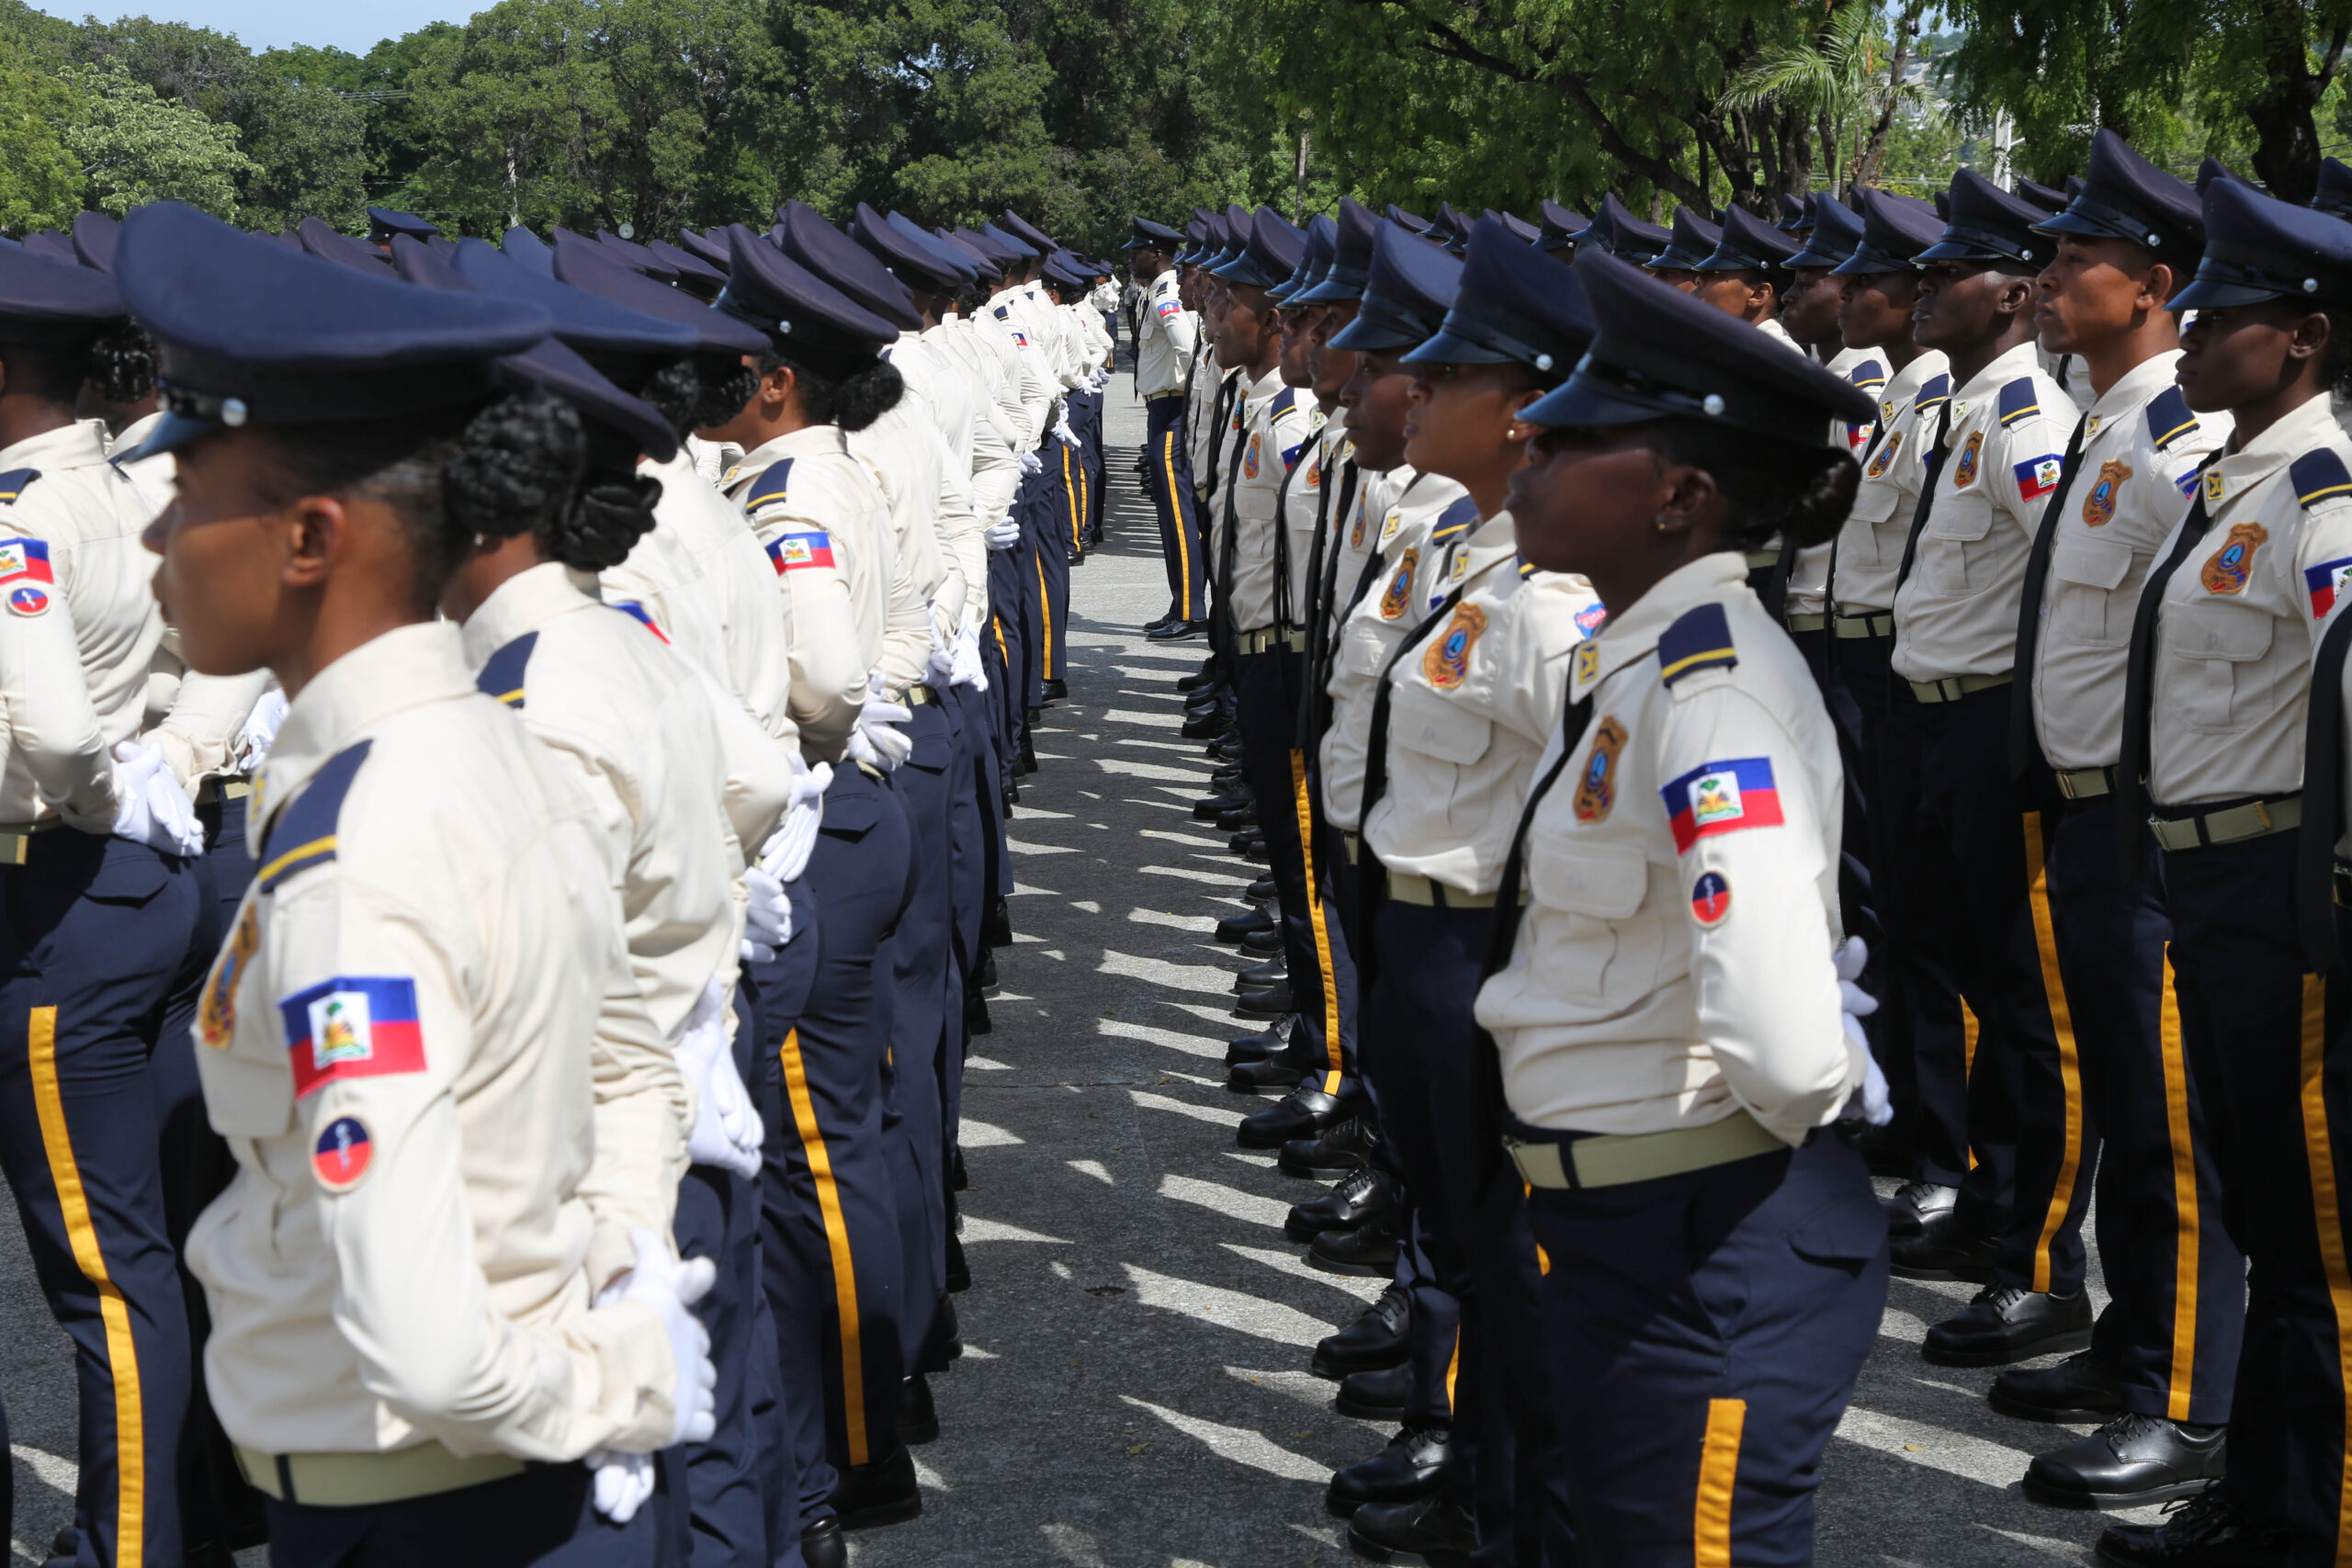 Haïti-sécurité publique:TOUTES LES UNITÉS DE LA POLICE EN ALERTE MAXIMALE 5